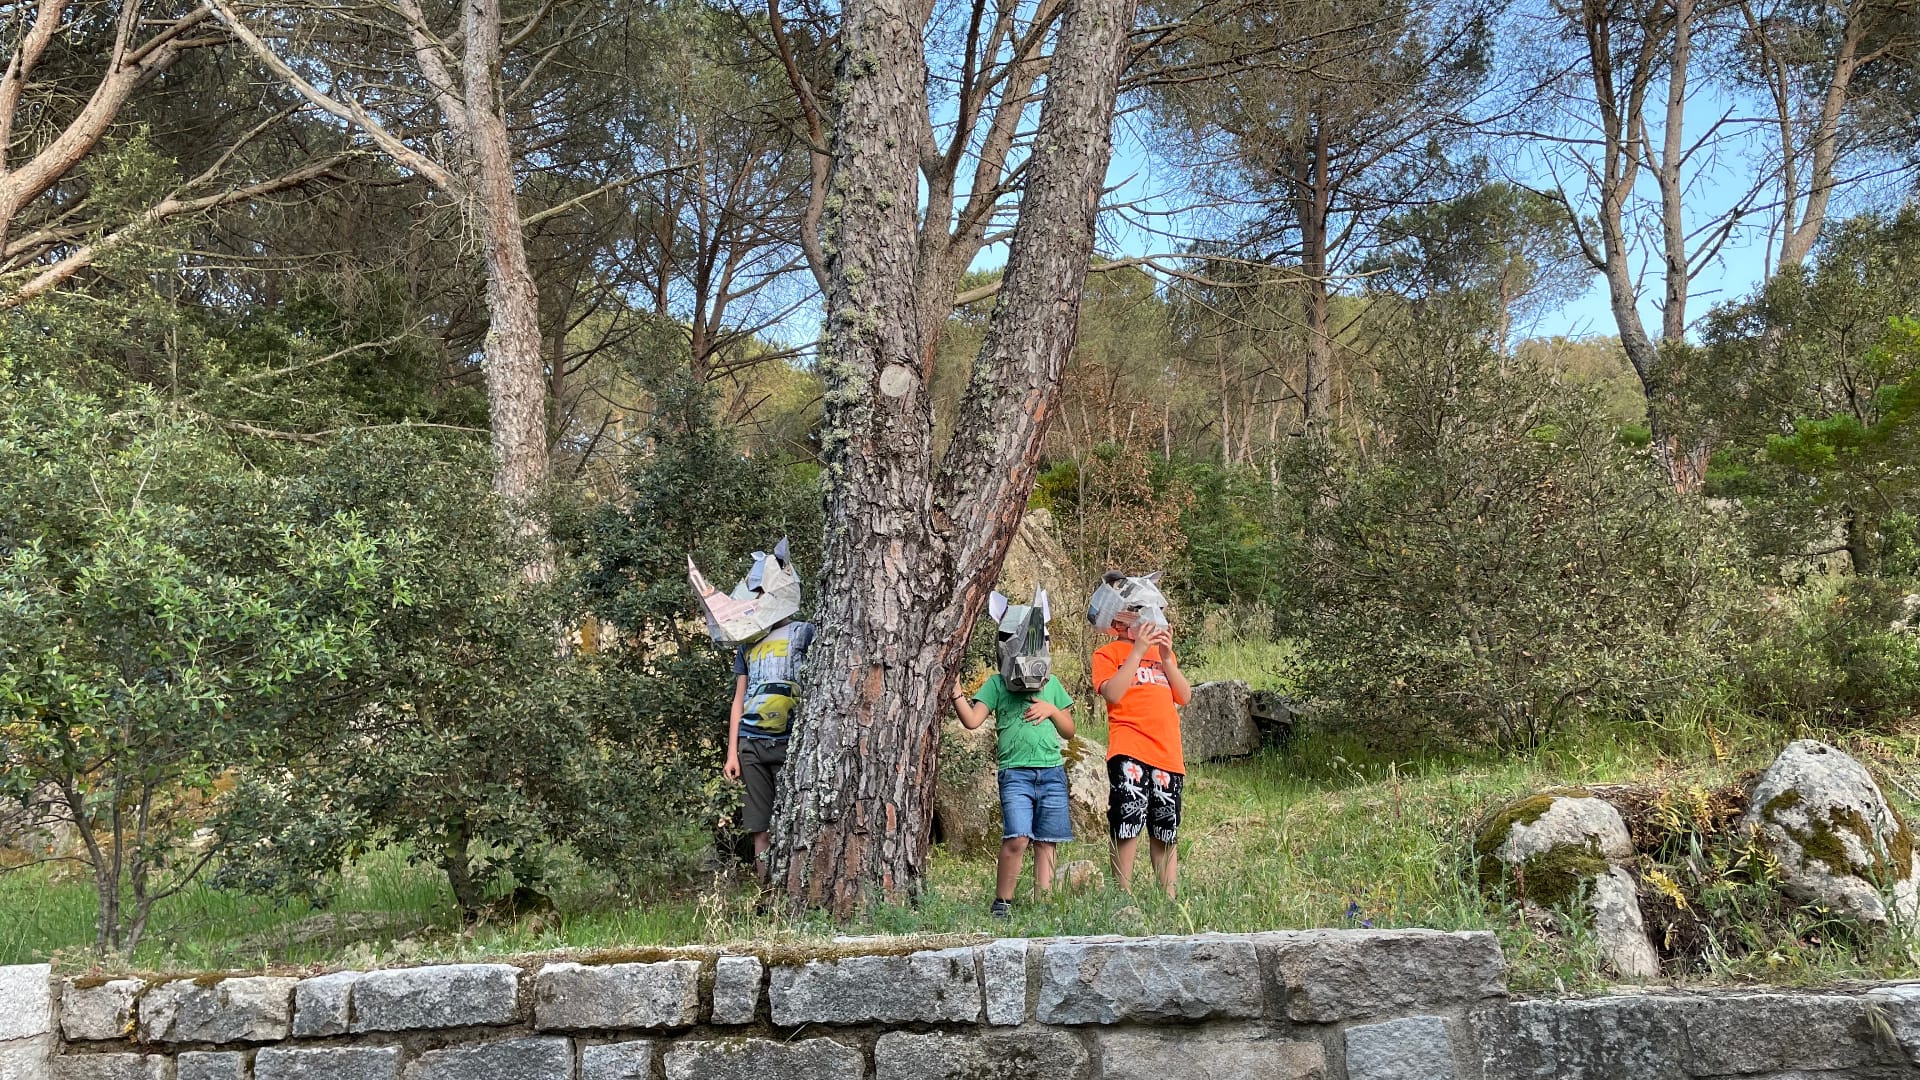 bambini con delle maschere di cartapesta giocano tra gli alberi